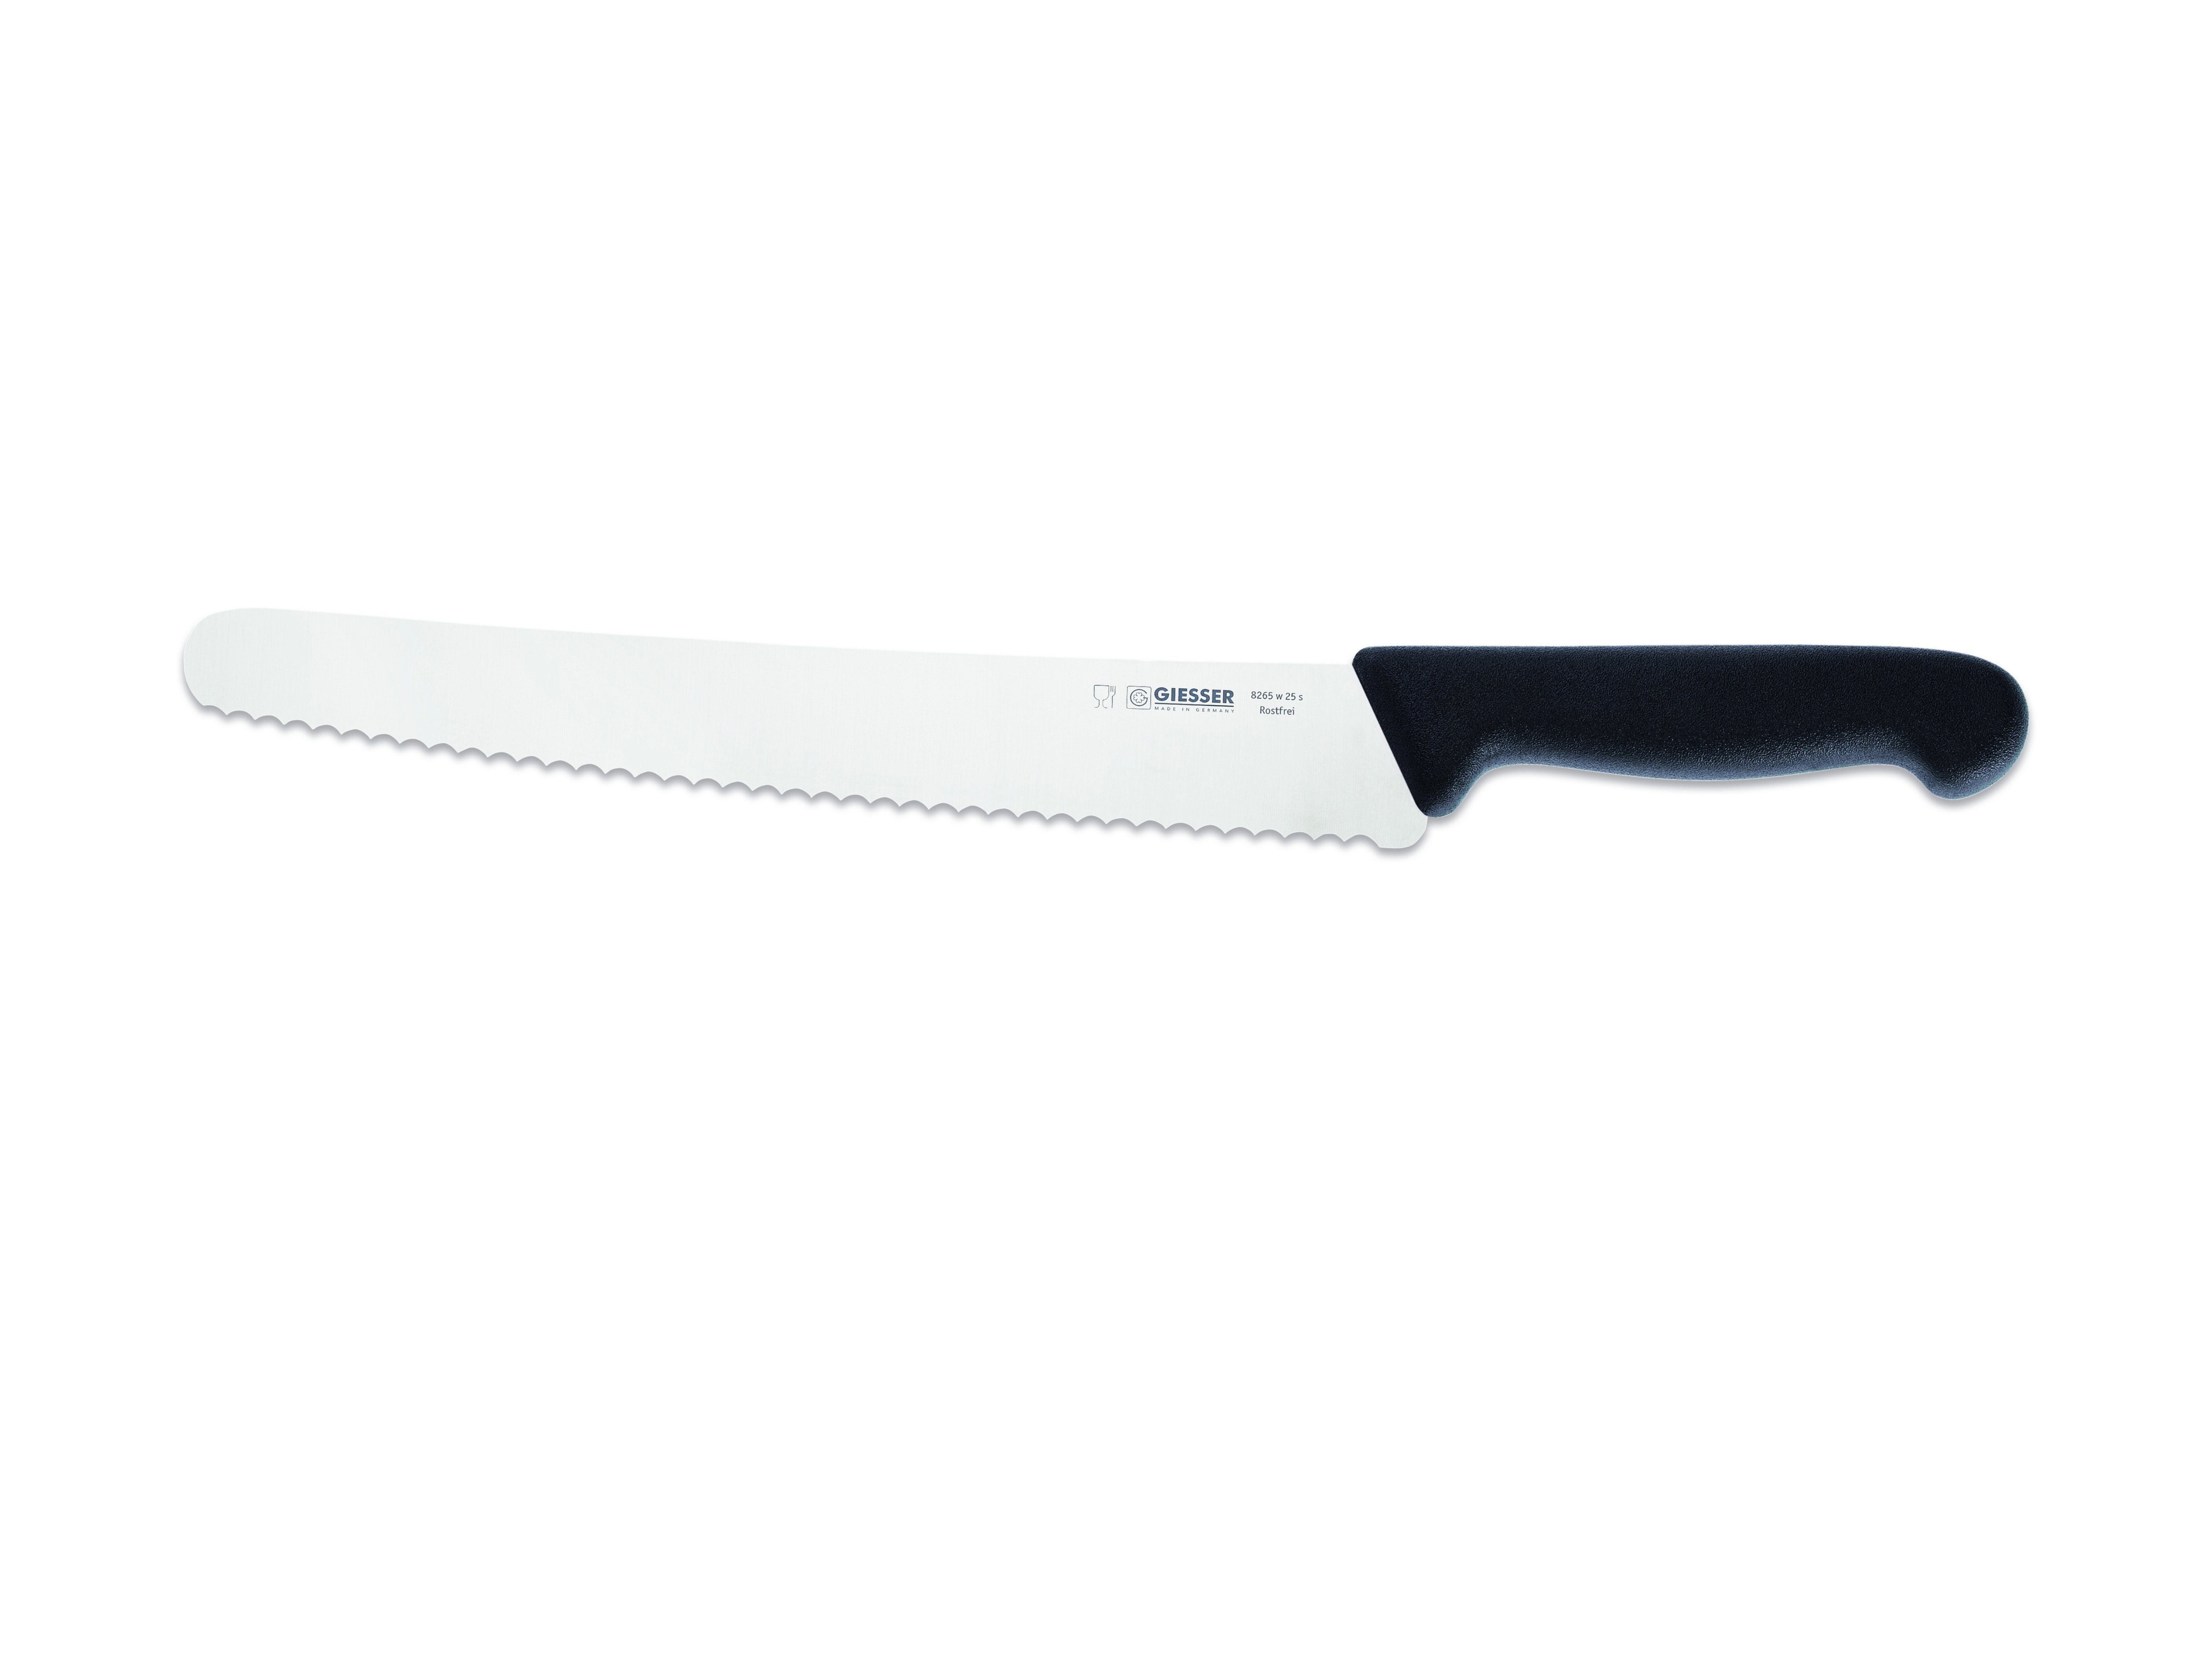 Giesser Messer Brotmesser Universalmesser links w - 8265 25, schwarz Welle kunststoffgespritzt